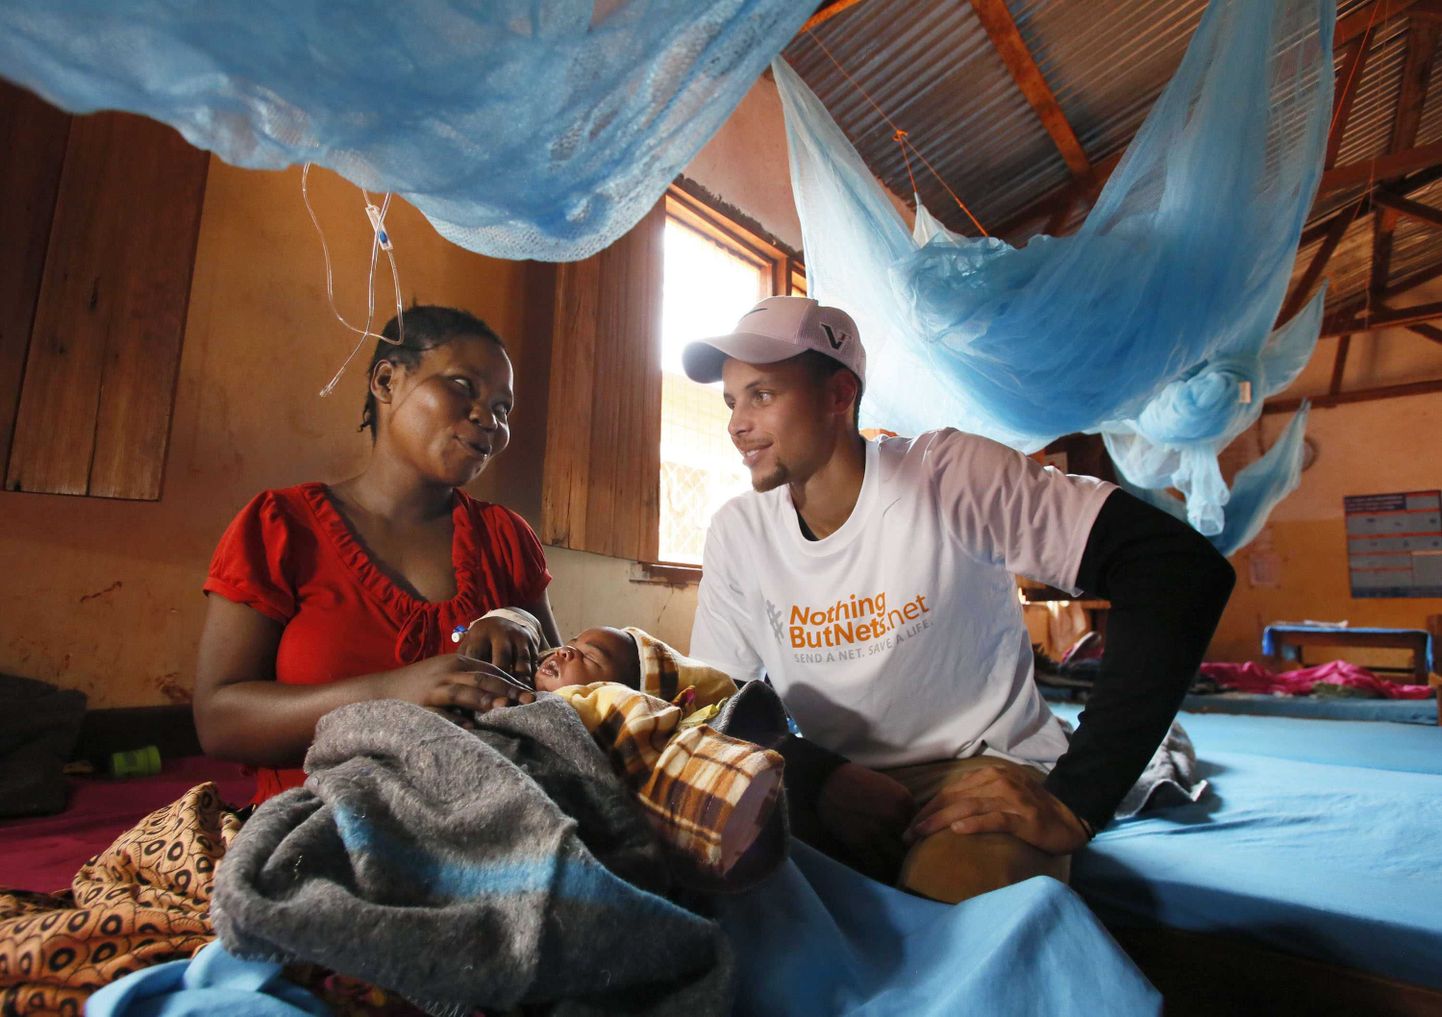 NBA korvpalliliiga superstaar Stephen Curry käis tänavu juulis külas Tansaanias Nyarugusu pagulaslaagris malaariavõrke jagamas. Pildil räägib ta malaariast paraneva naisega.